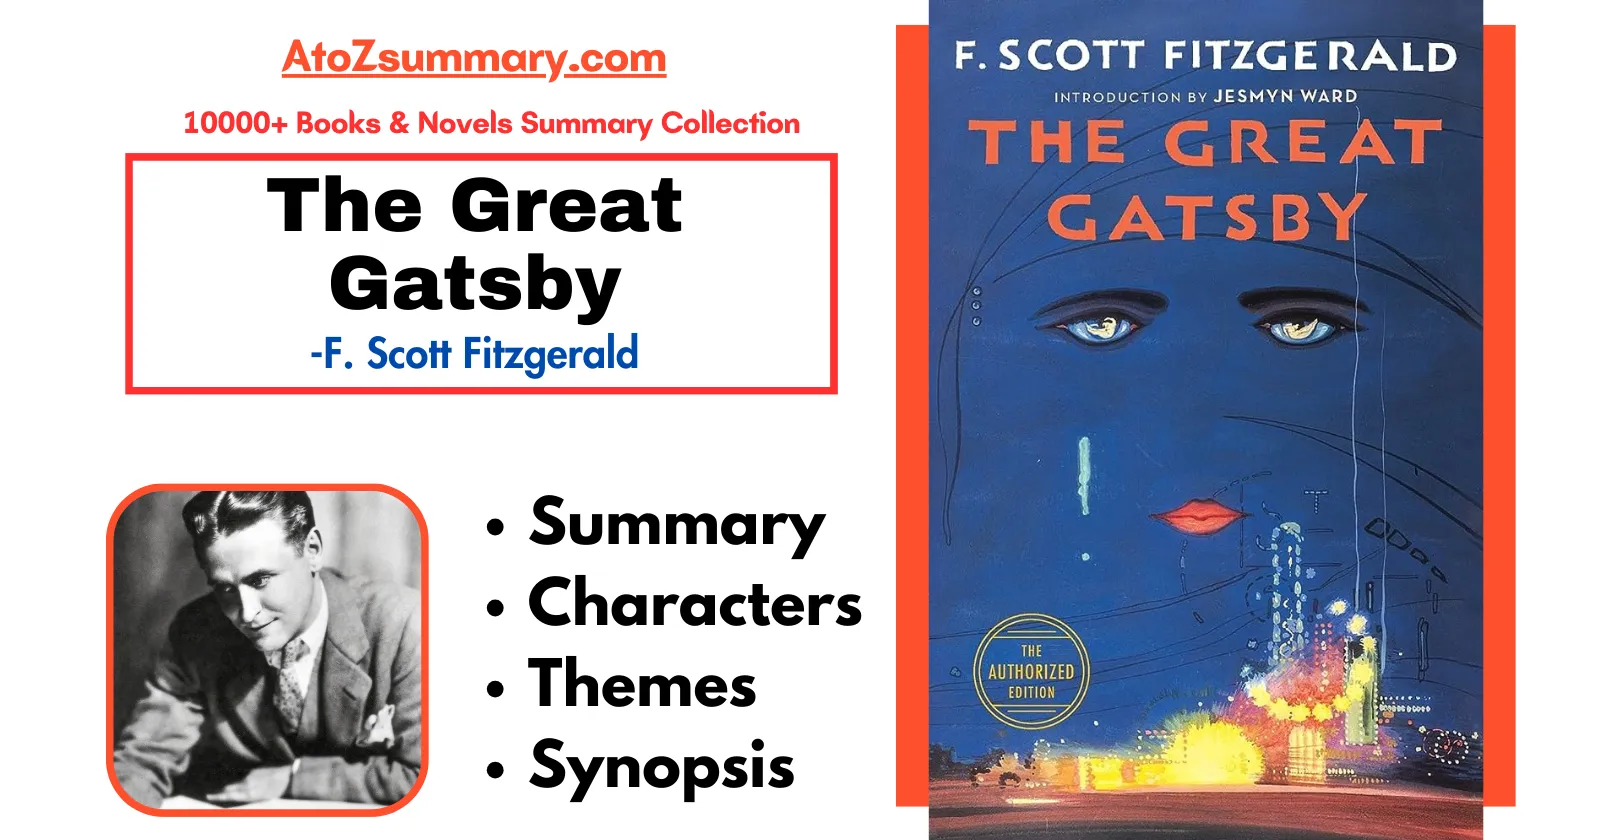 The Great Gatsby summary